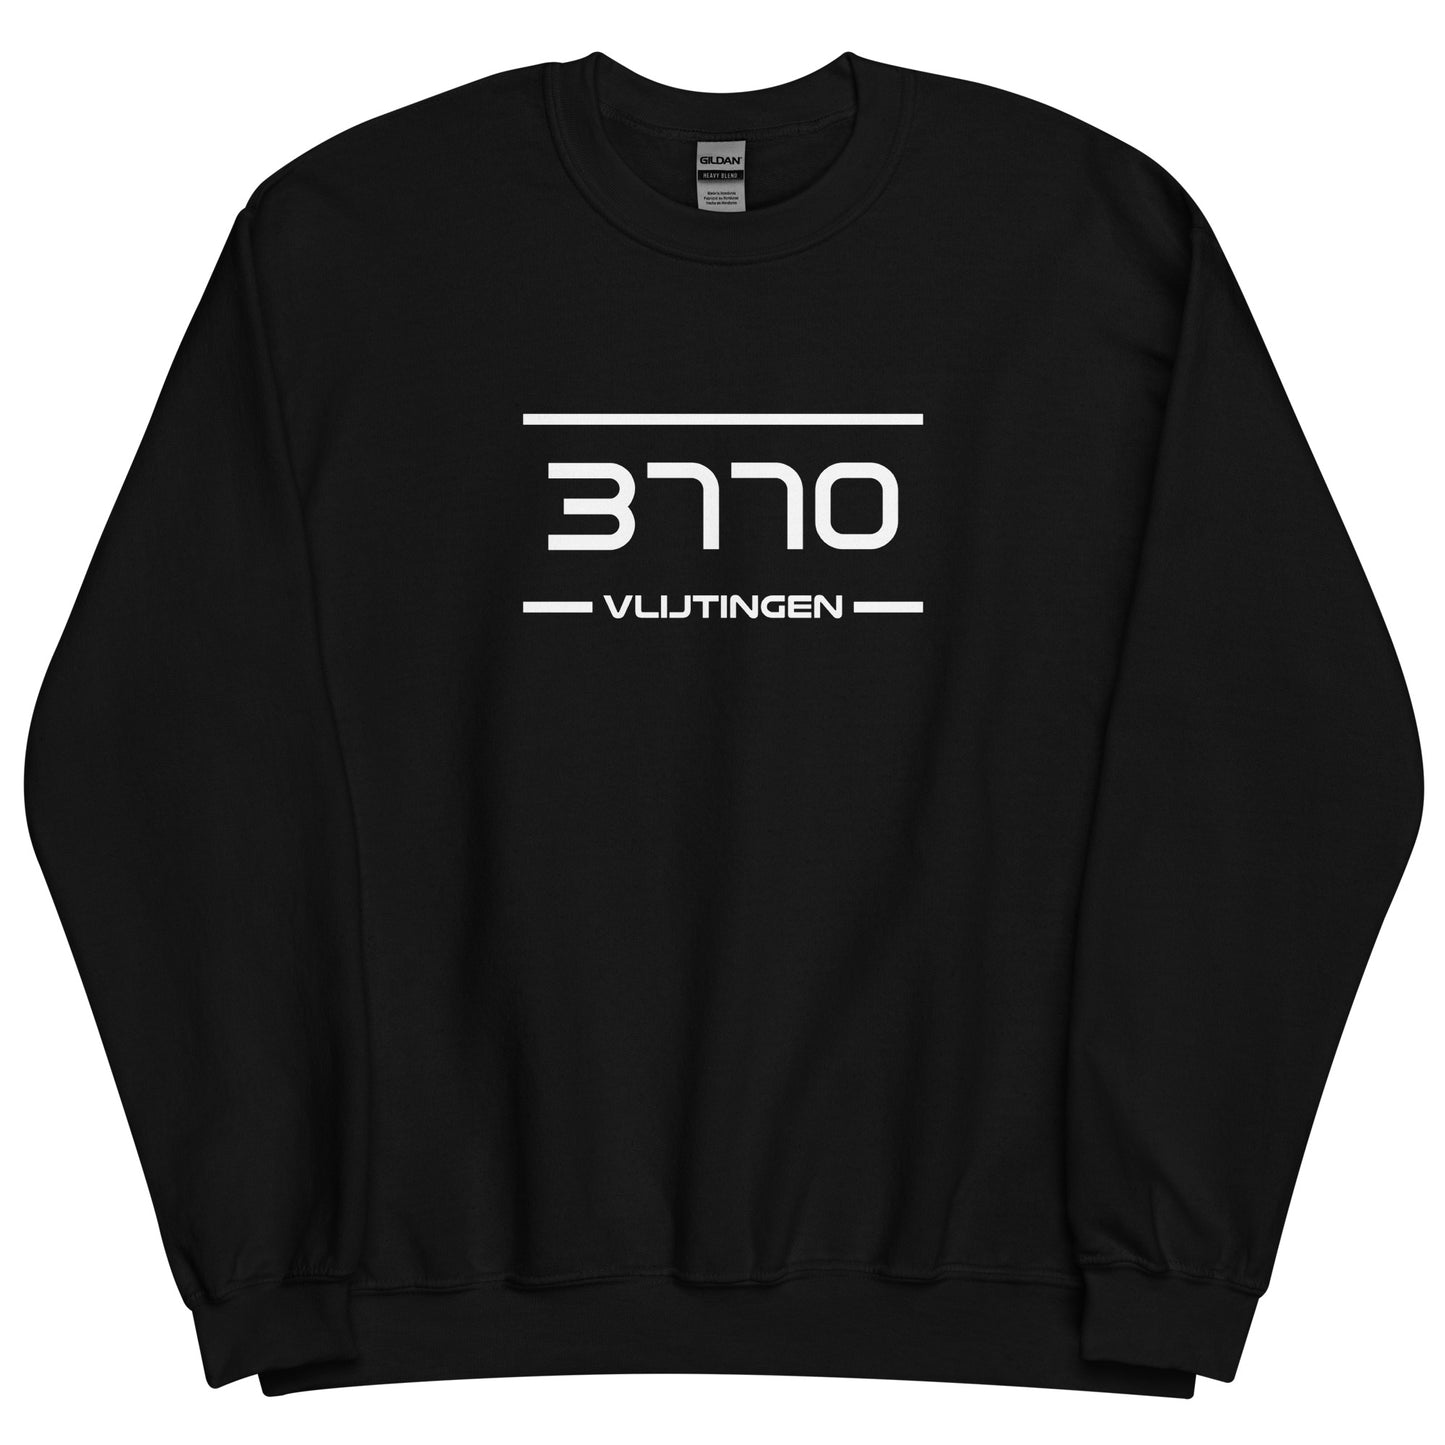 Sweater - 3770 - Vlijtingen (M/V)